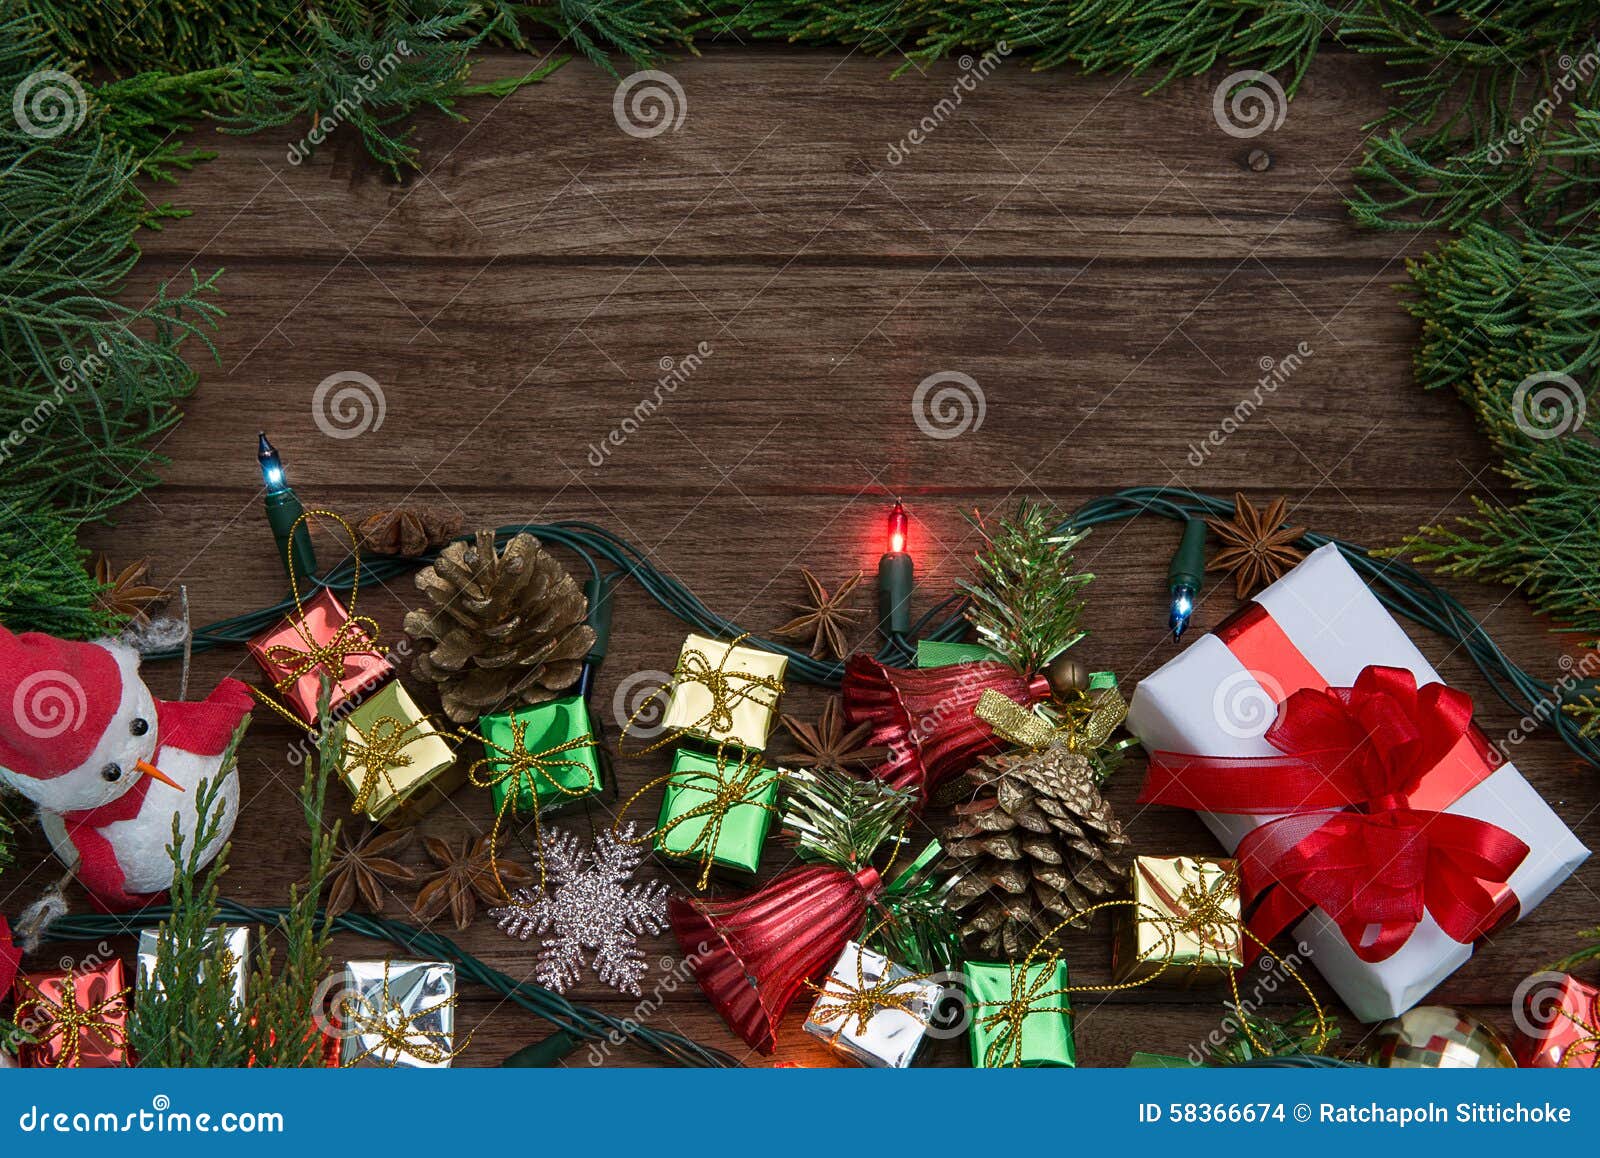 Trang trí Giáng Sinh với phong cách rustic (đồng quê) mang đến sự ấm áp và thiên nhiên cho ngôi nhà của bạn. Hãy nghía qua các hình ảnh để lấy những ý tưởng trang trí độc đáo và thú vị cho mùa lễ hội này.